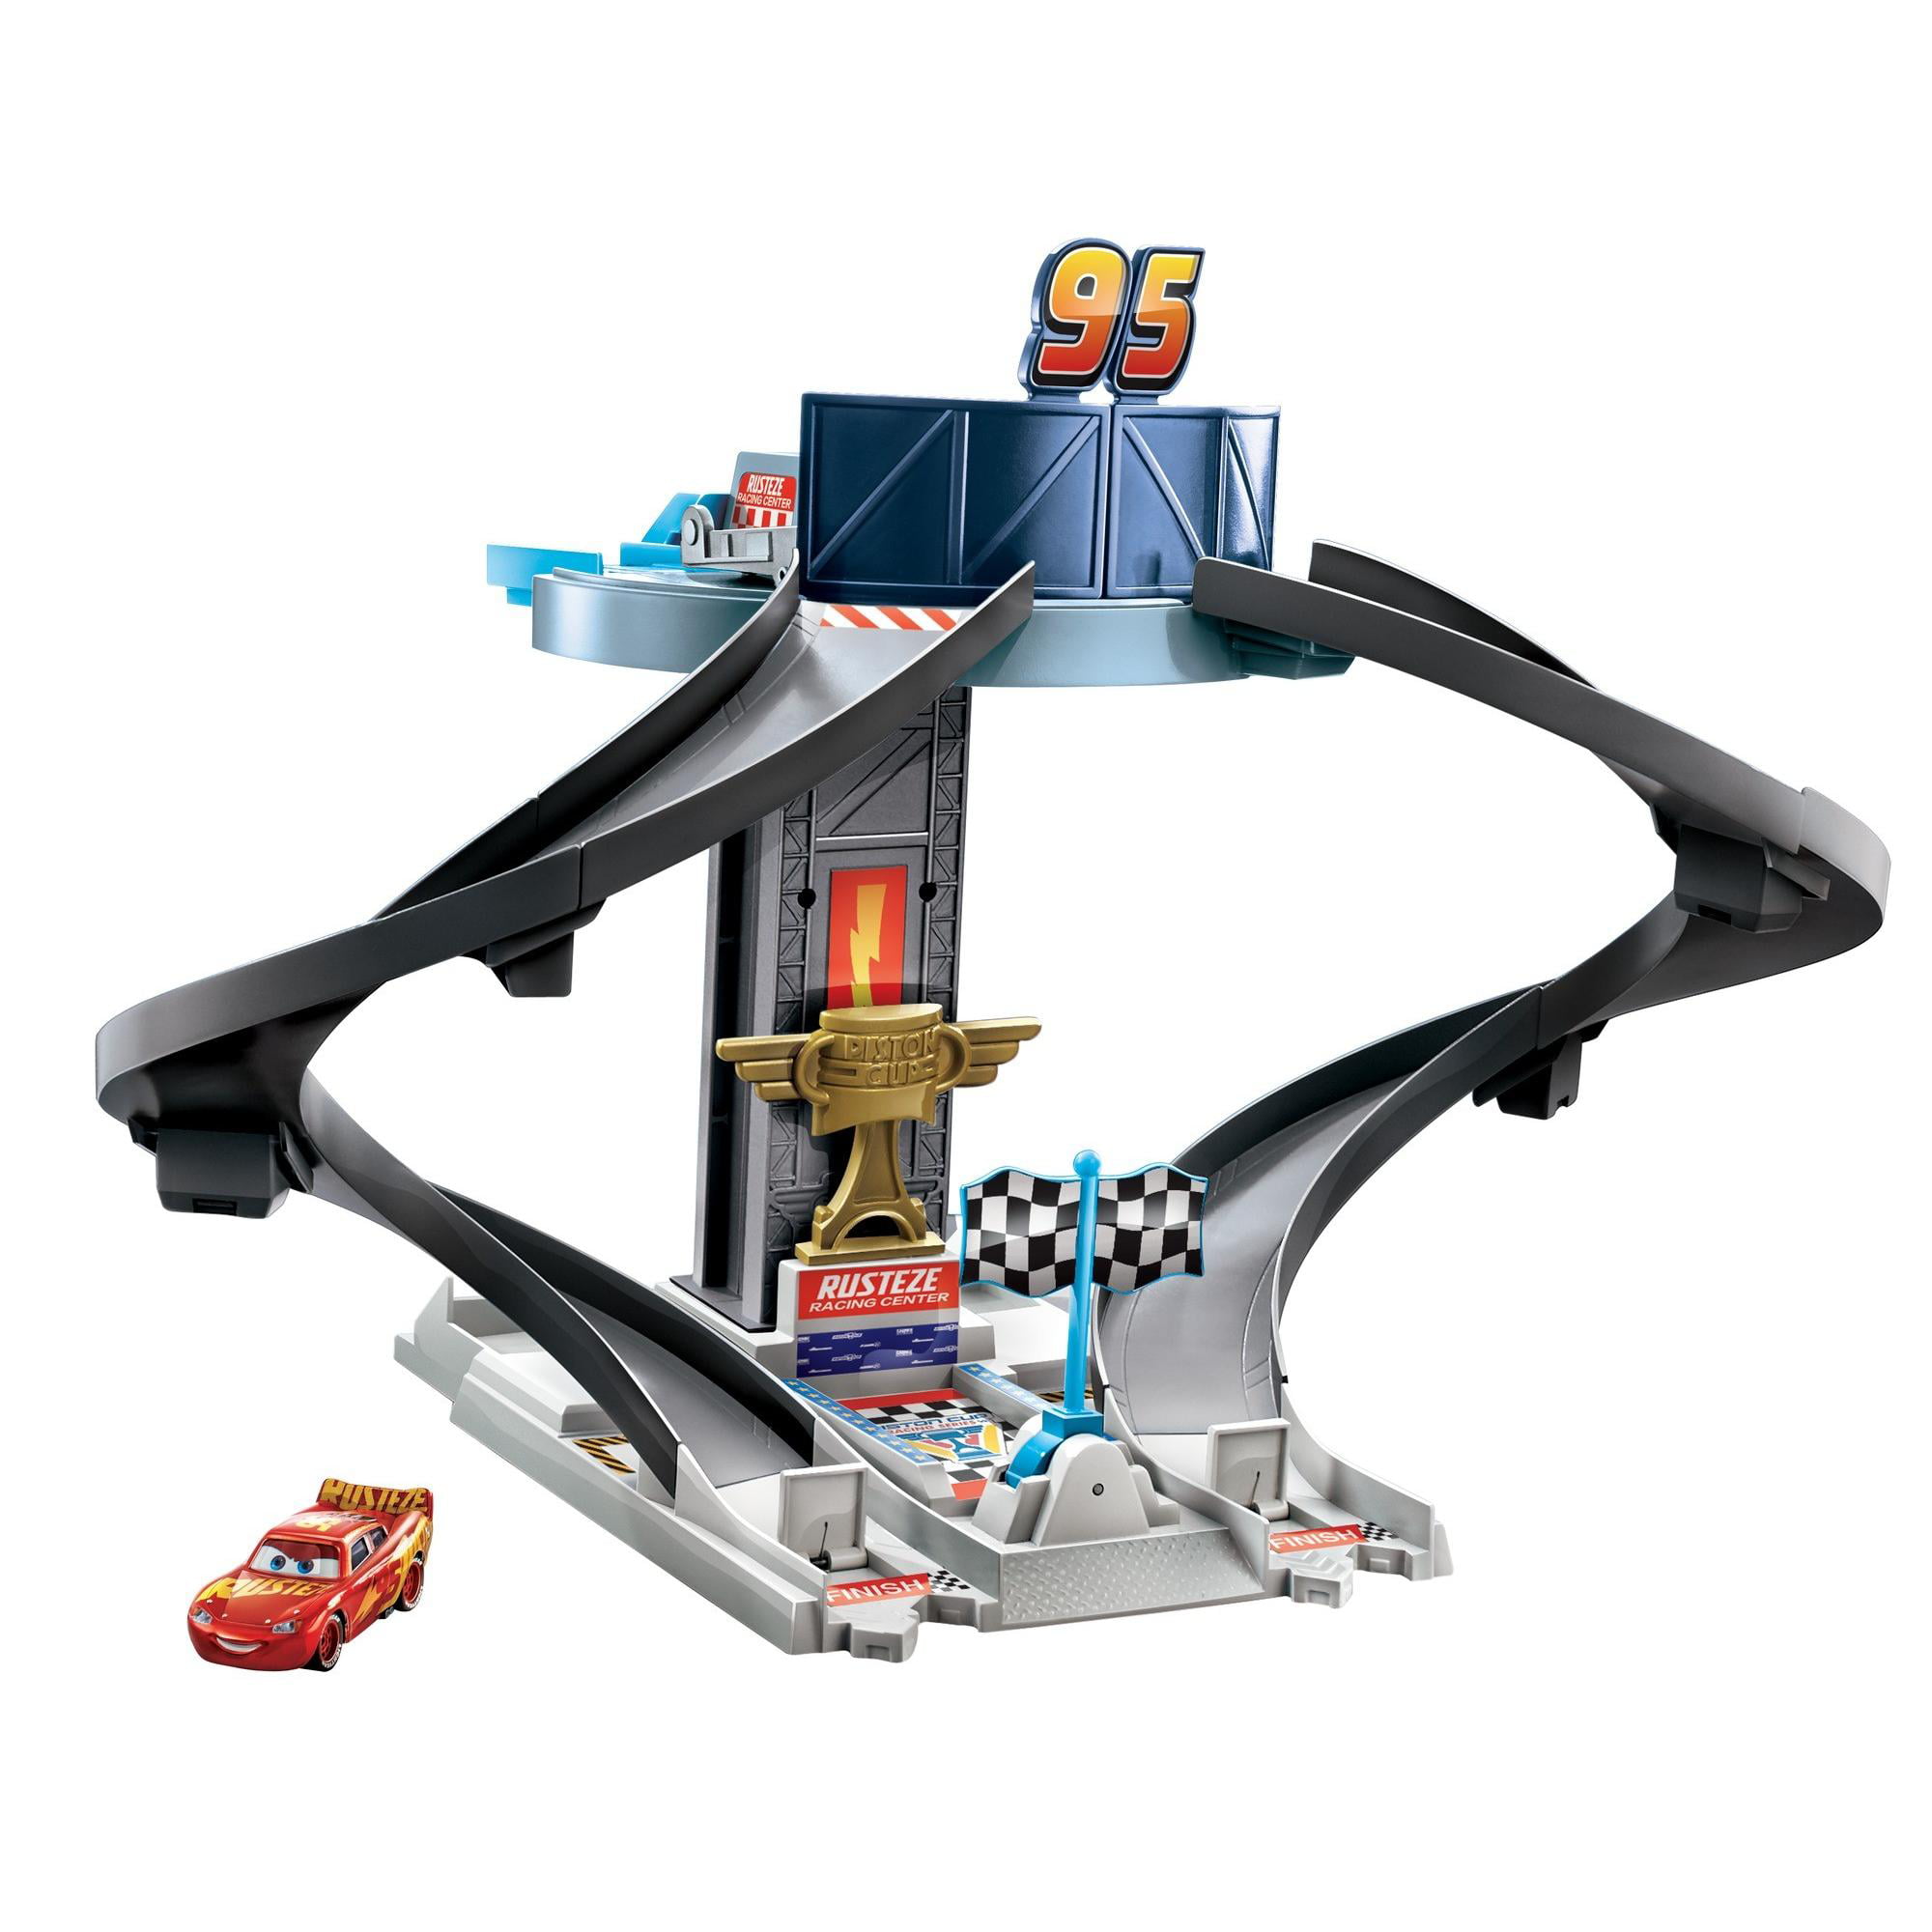 Disney Pixar Cars RustEze Racing Tower Race Car Track Set